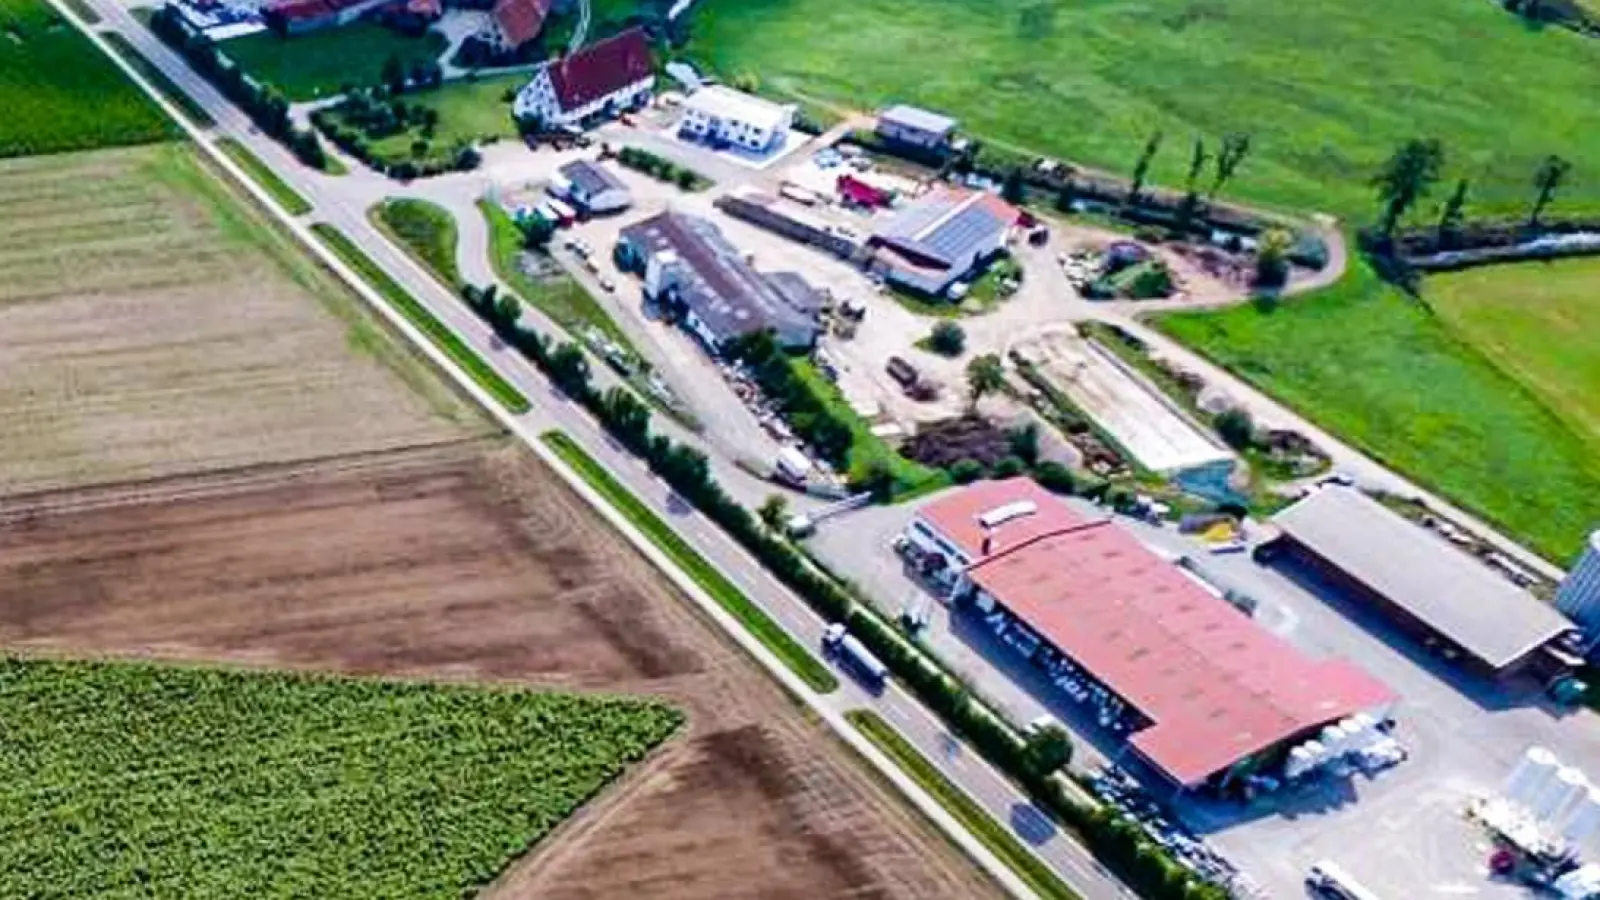 Der Agrarfachhandel am Stadtrand von Herrieden (unten im Bild) ist zum zweiten Mal innerhalb weniger Wochen Ziel eines Beutezuges bislang unbekannter Diebe geworden. (Foto: privat)